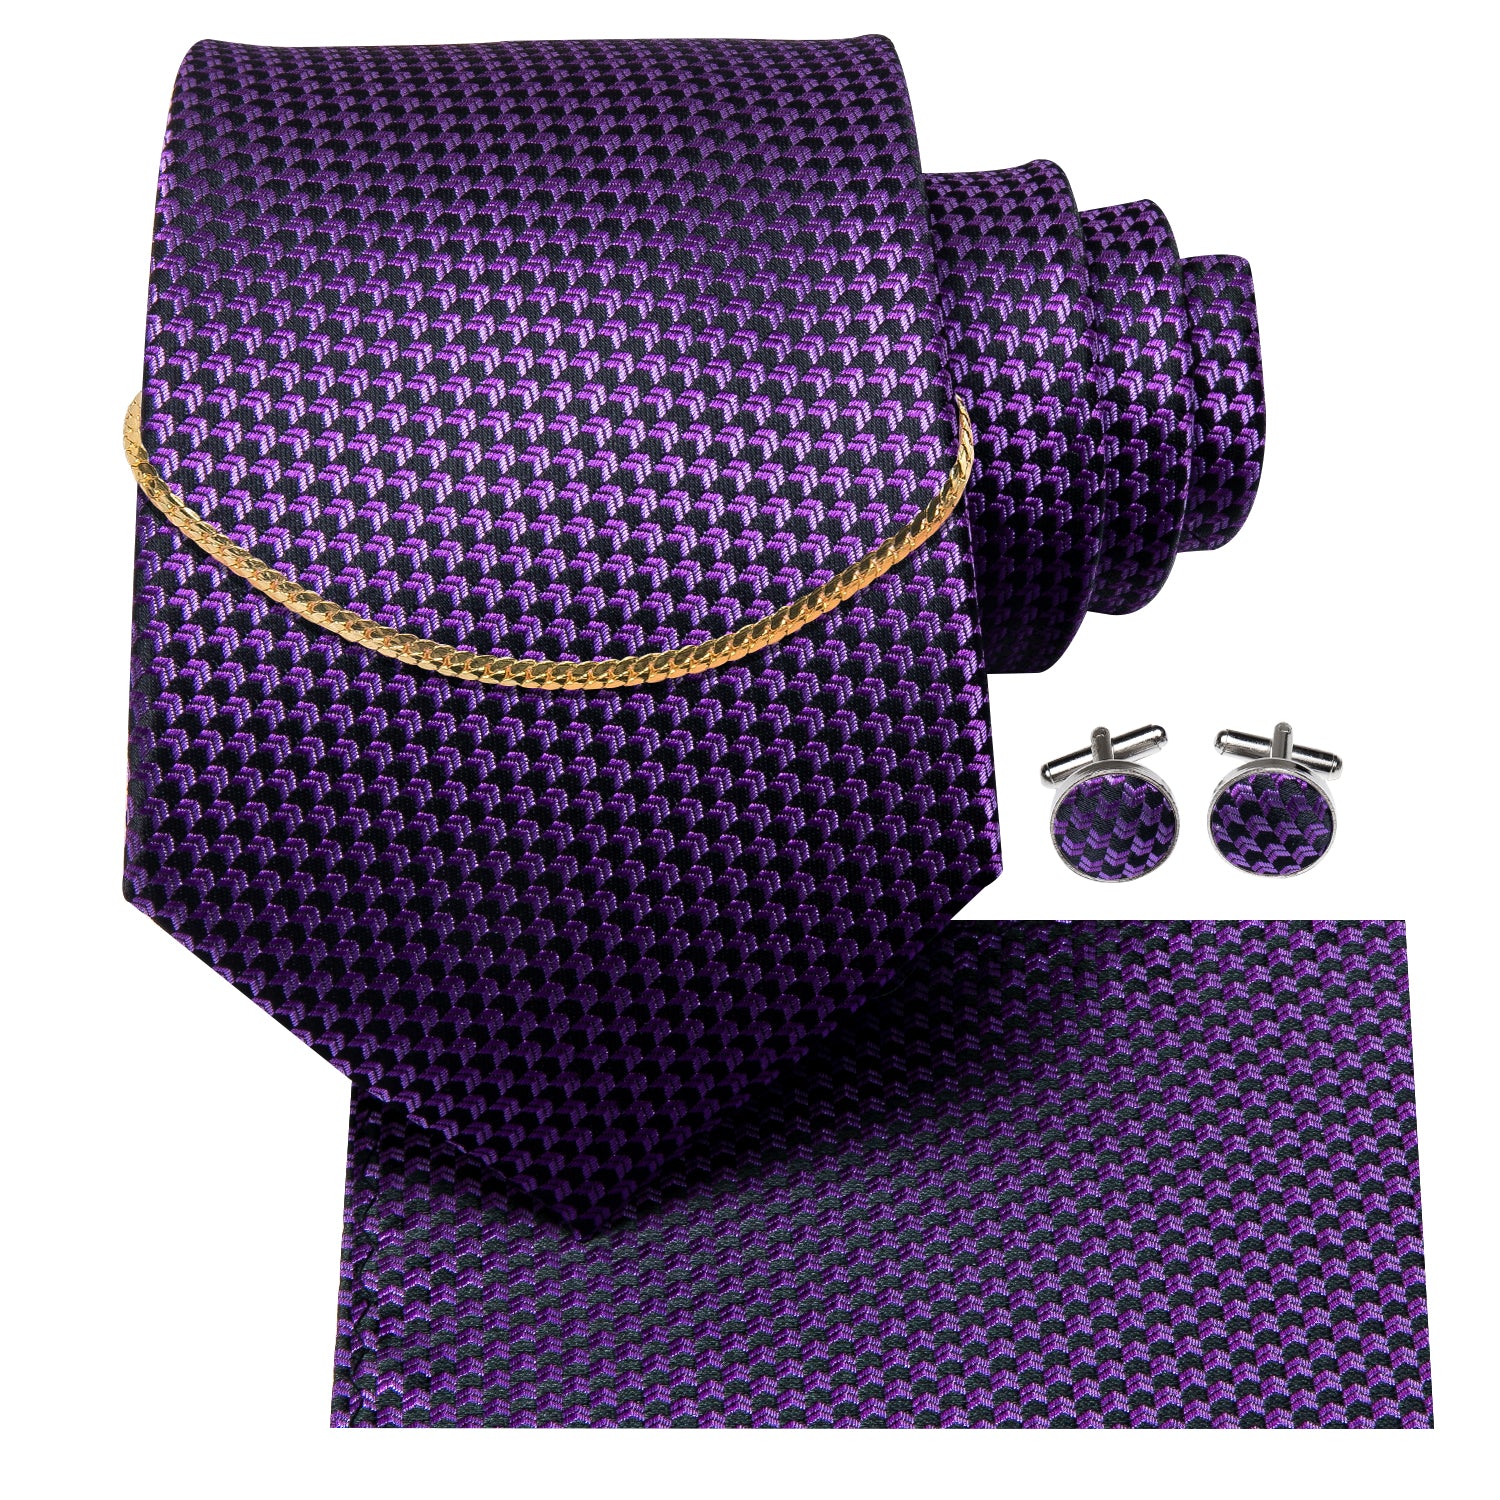 Purple Plaid Men's Necktie Pocket Square Cufflinks Set With Golden Chain